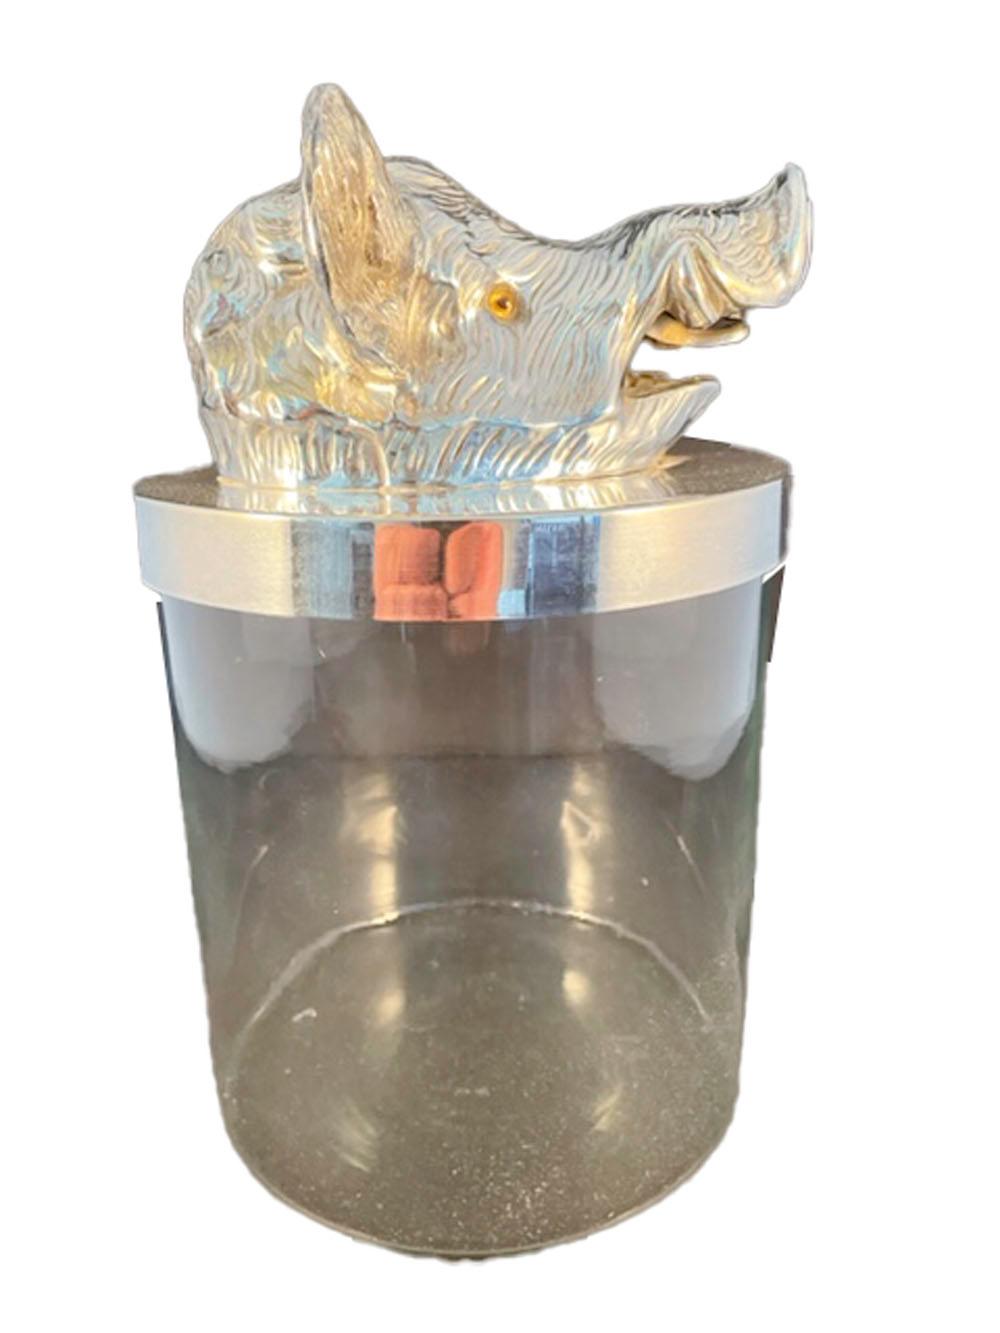 Vintage Klarglaskrug in zylindrischer Form mit Silberrand und Deckel. Der Deckel mit einem Modell eines Wildschweinkopfes mit Glasaugen. Wird Valenti, Spanien, zugeschrieben.